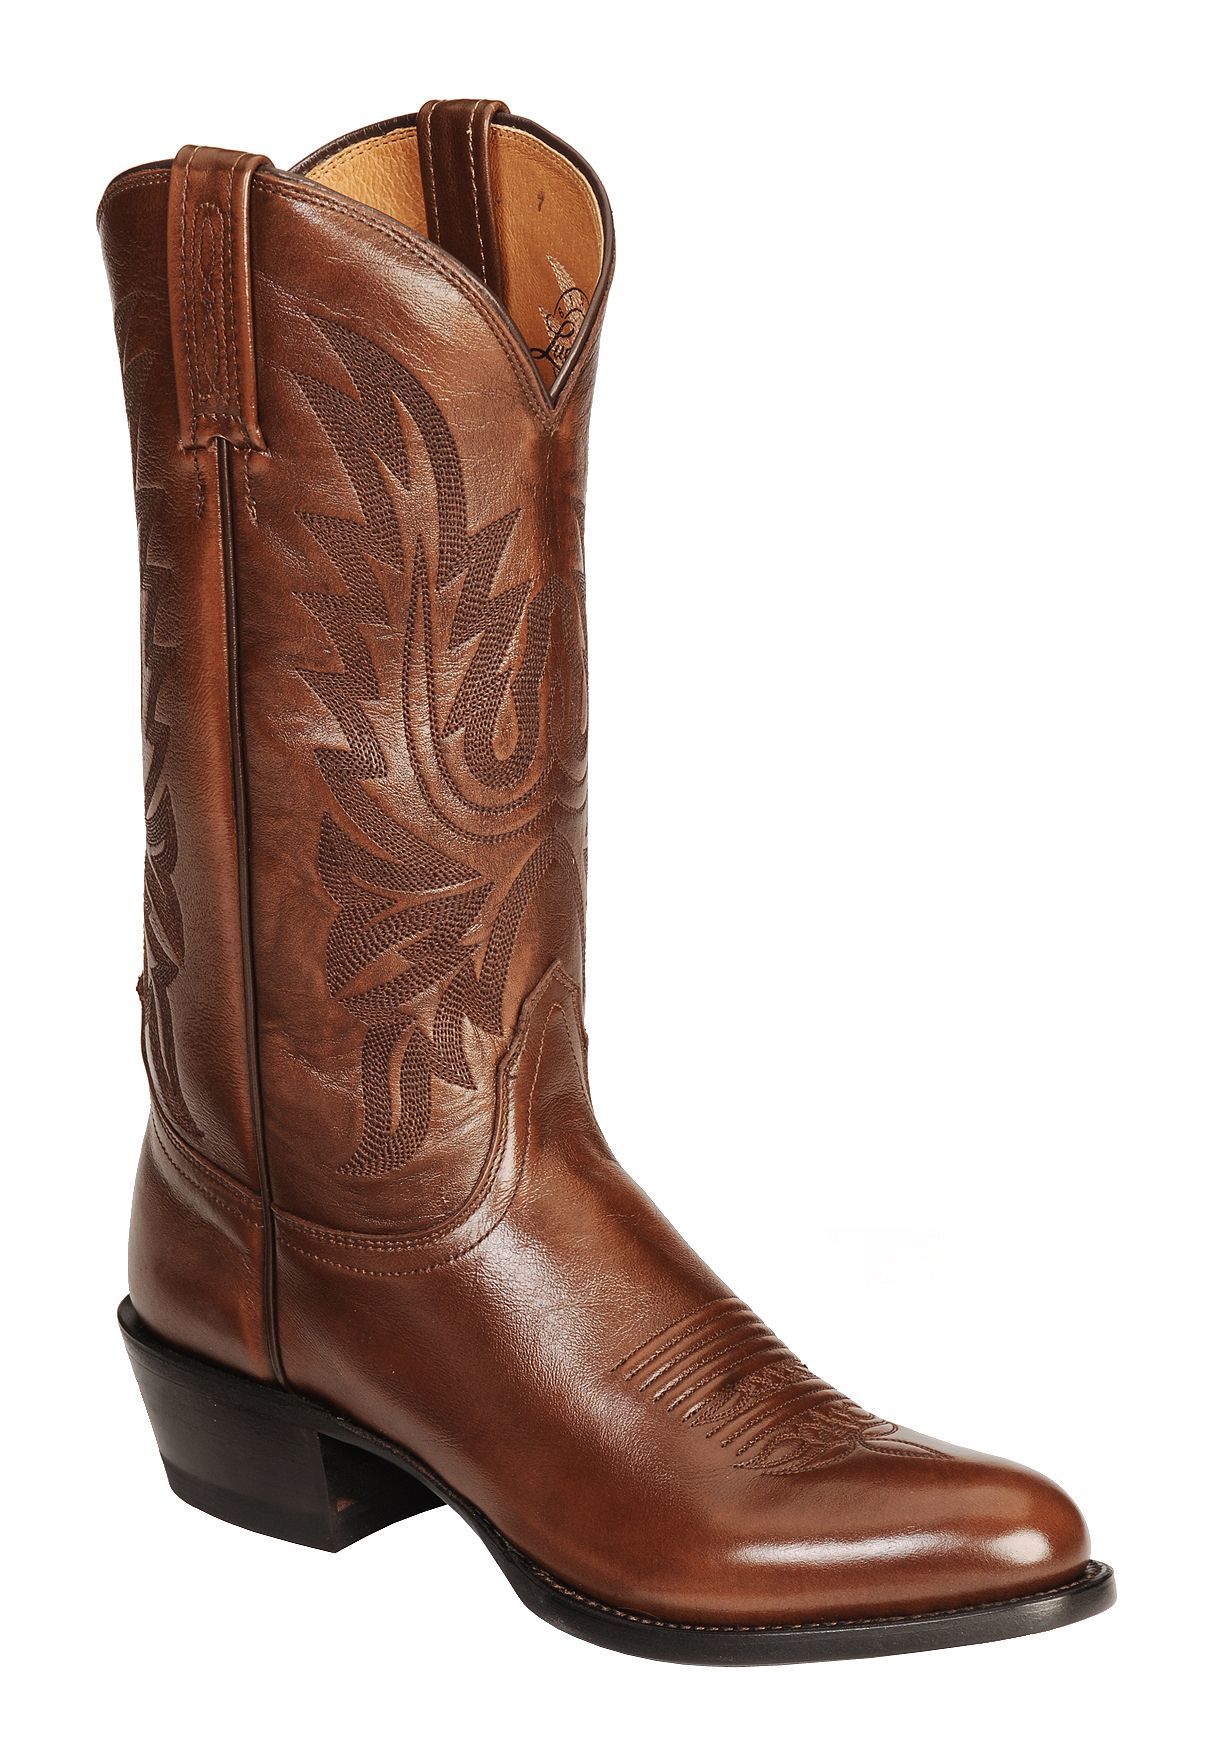 Menu0027s Dress Cowboy Boots